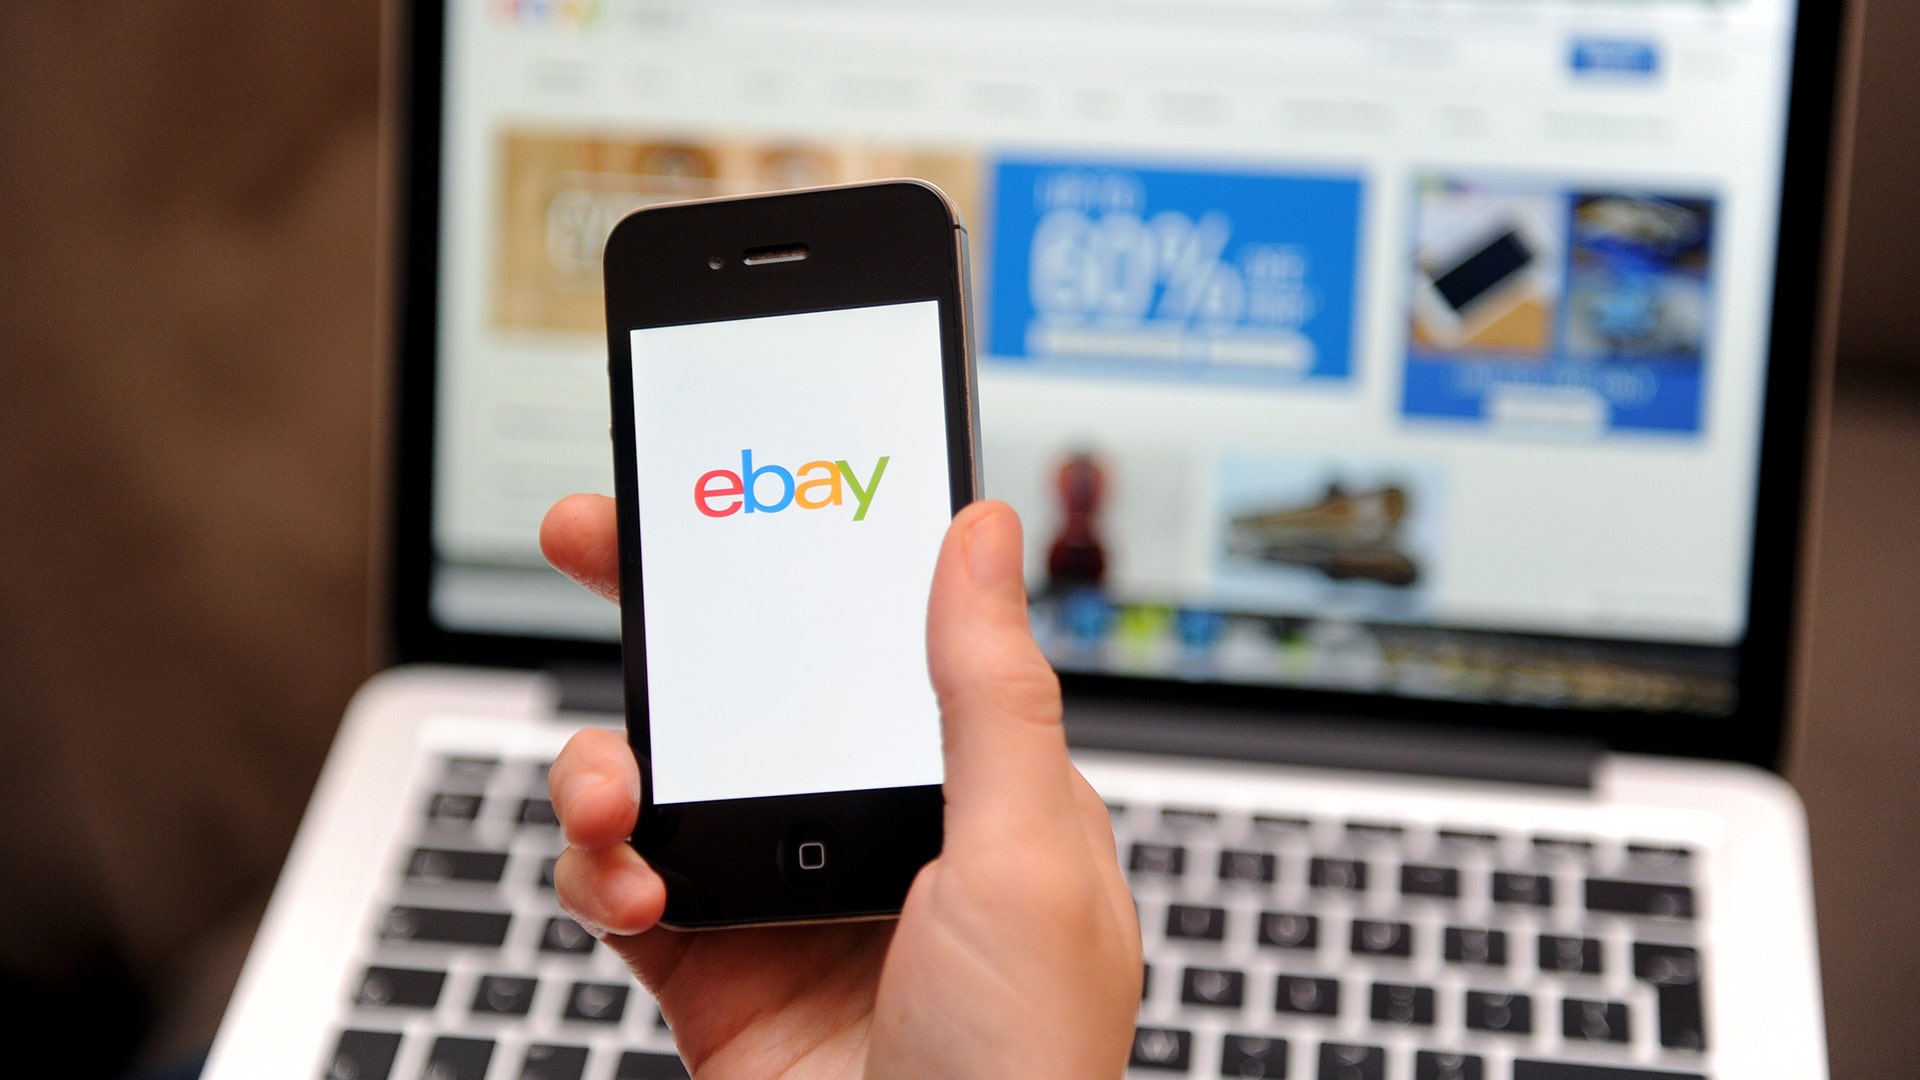 Mua hàng trên ebay có bị đánh thuế không?